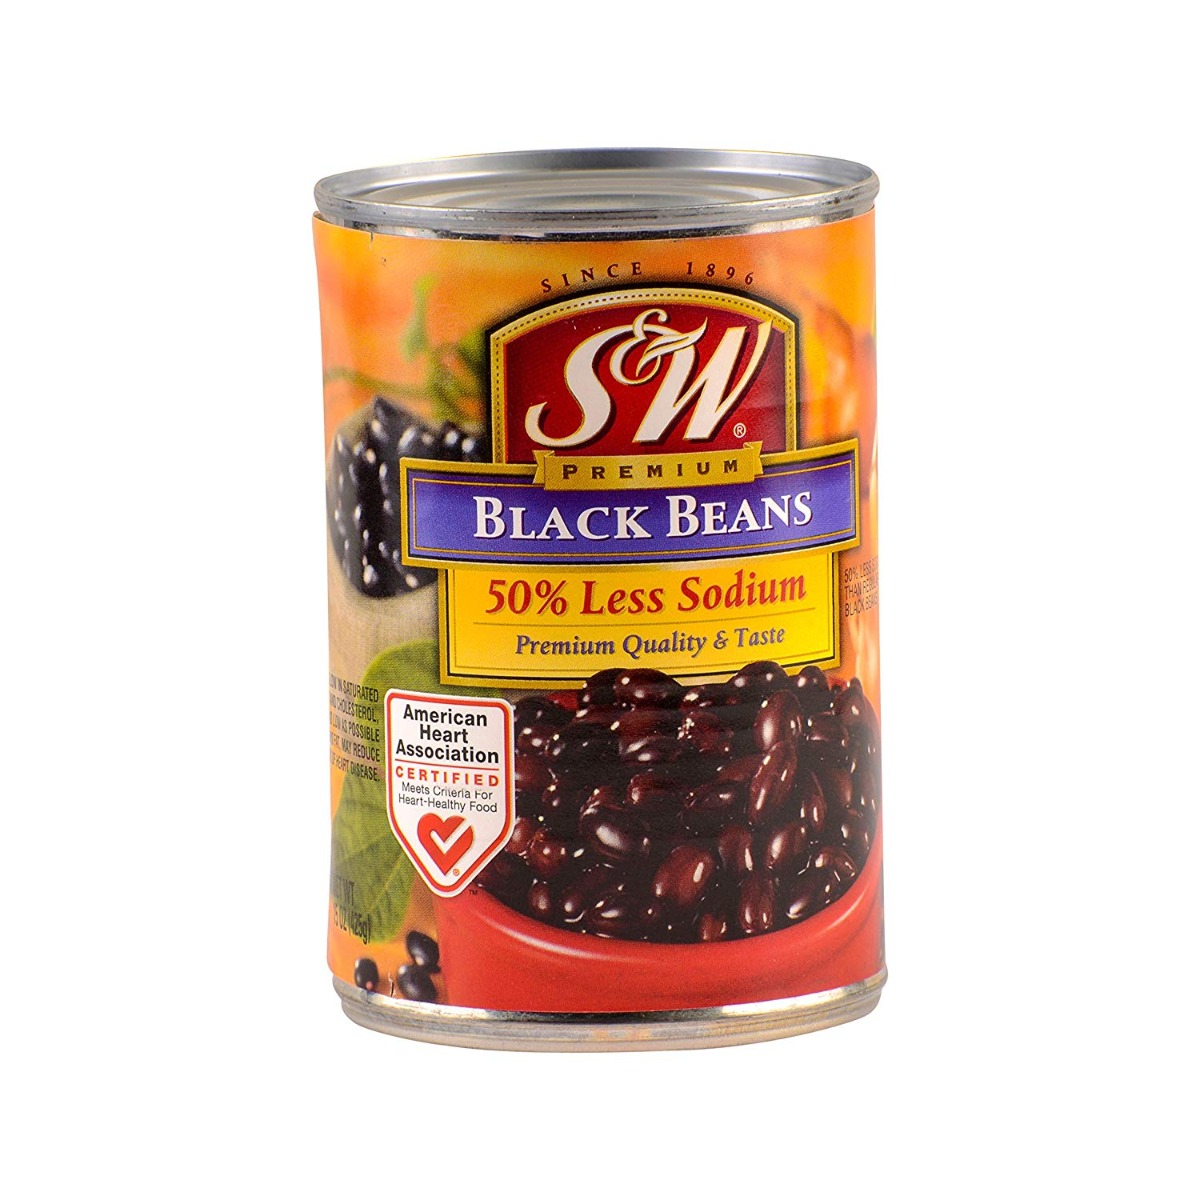 S & W: Black Beans Premium 50% Less Sodium, 15 oz - 0072273387737